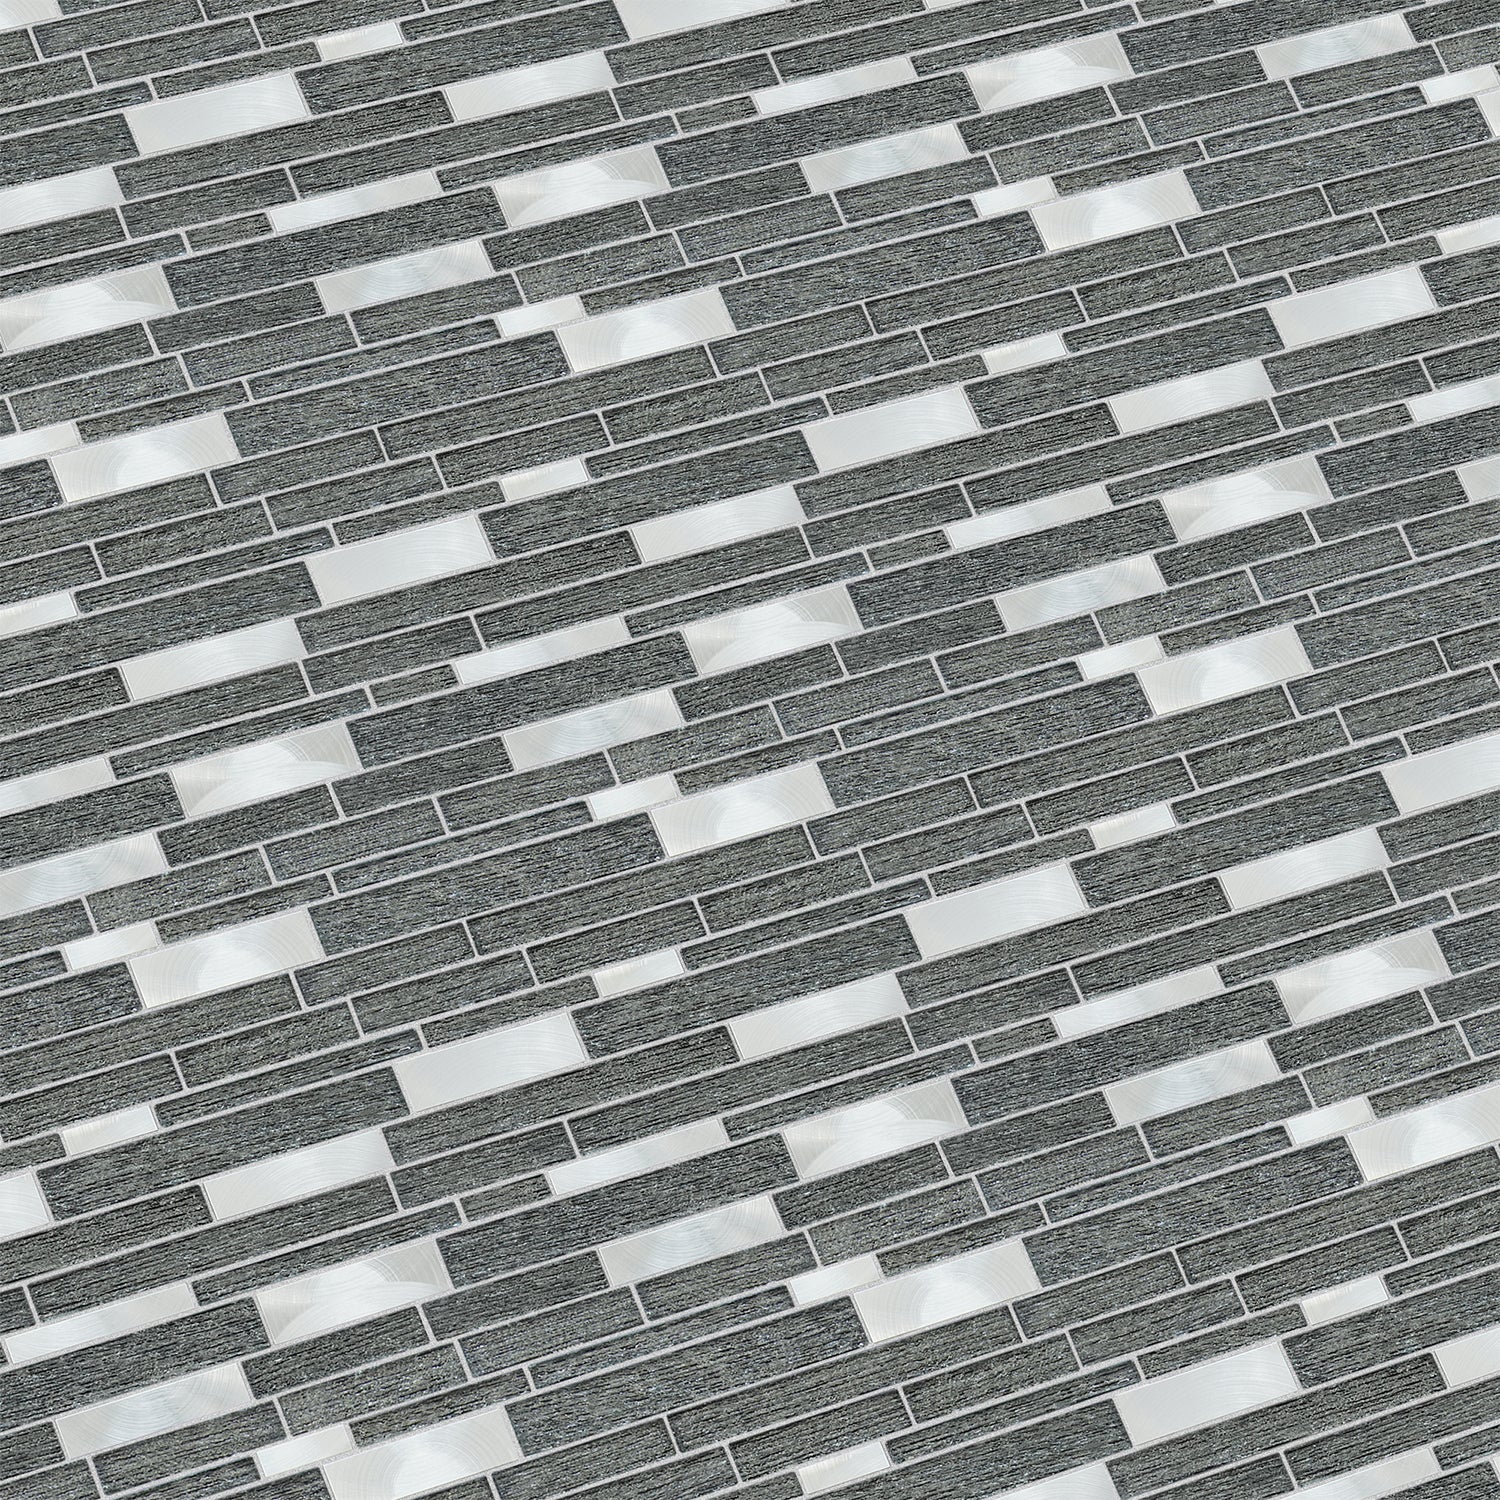 Glena 11.8" x 11.8" Rectangular Laminated Glass Mosaic Mix Aluminum Wall Tile